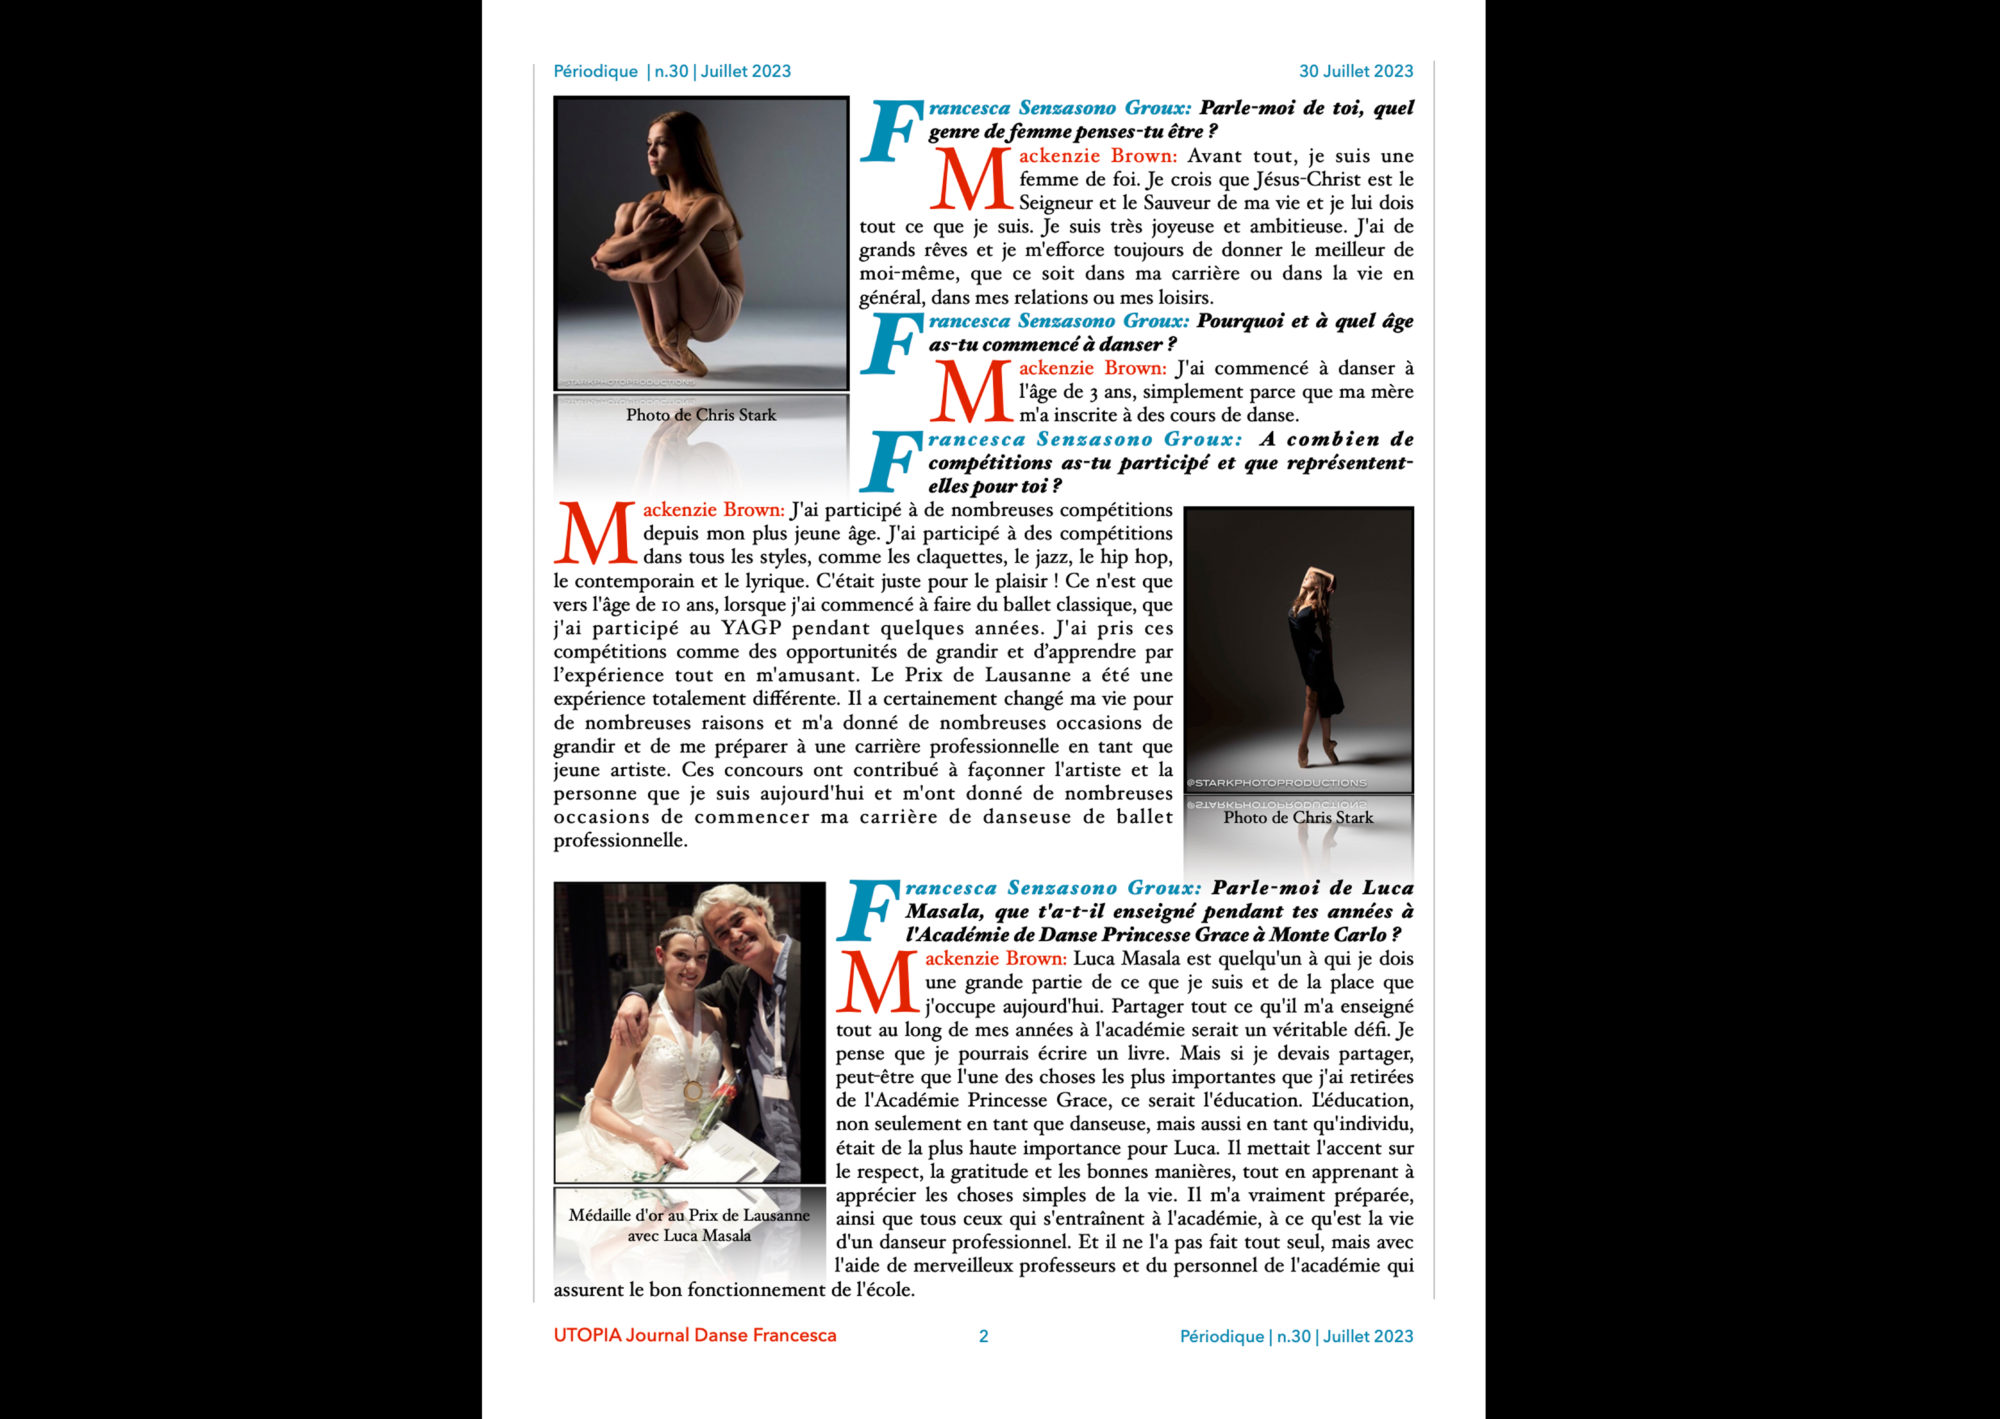 ©UTOPIA Journal Danse Francesca Périodique n.30 30 juillet 2023 page 2